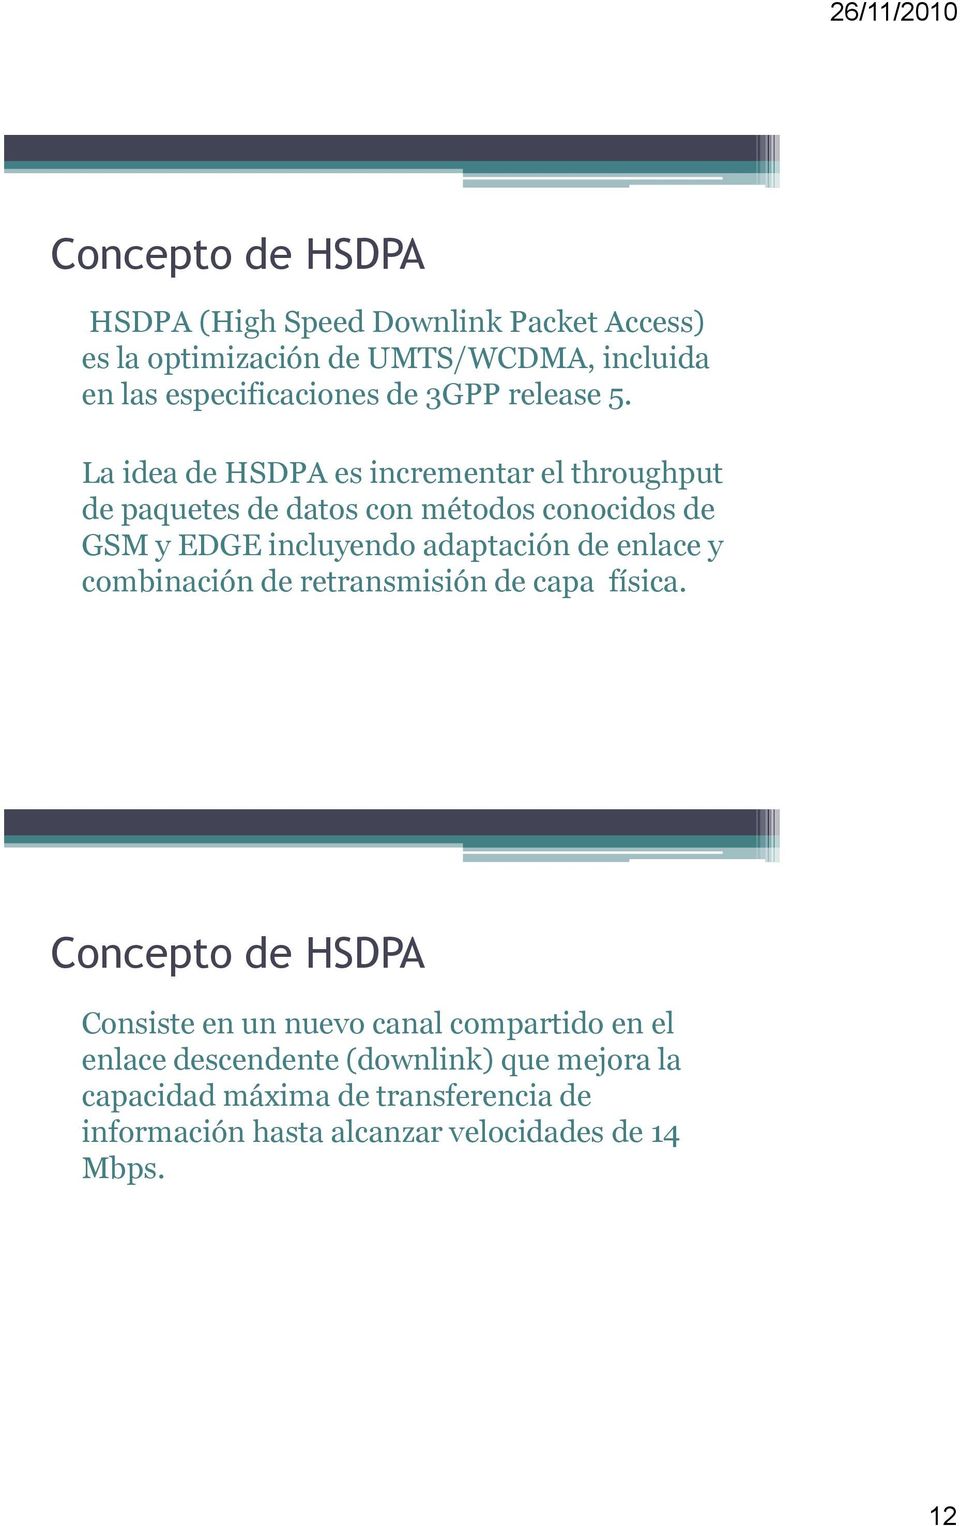 La idea de HSDPA es incrementar el throughput de paquetes de datos con métodos conocidos de GSM y EDGE incluyendo adaptación de